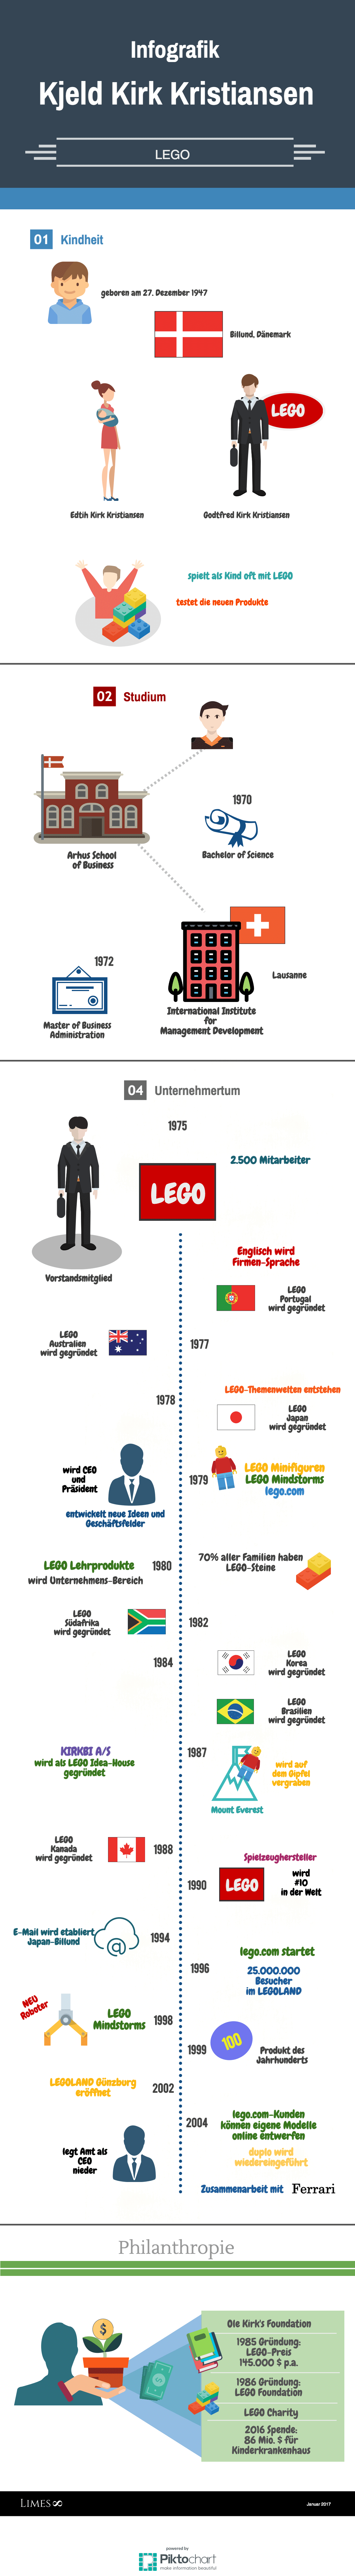 Informationsgrafik des LEGO Milliardärs Kjeld Kirk Kristiansen